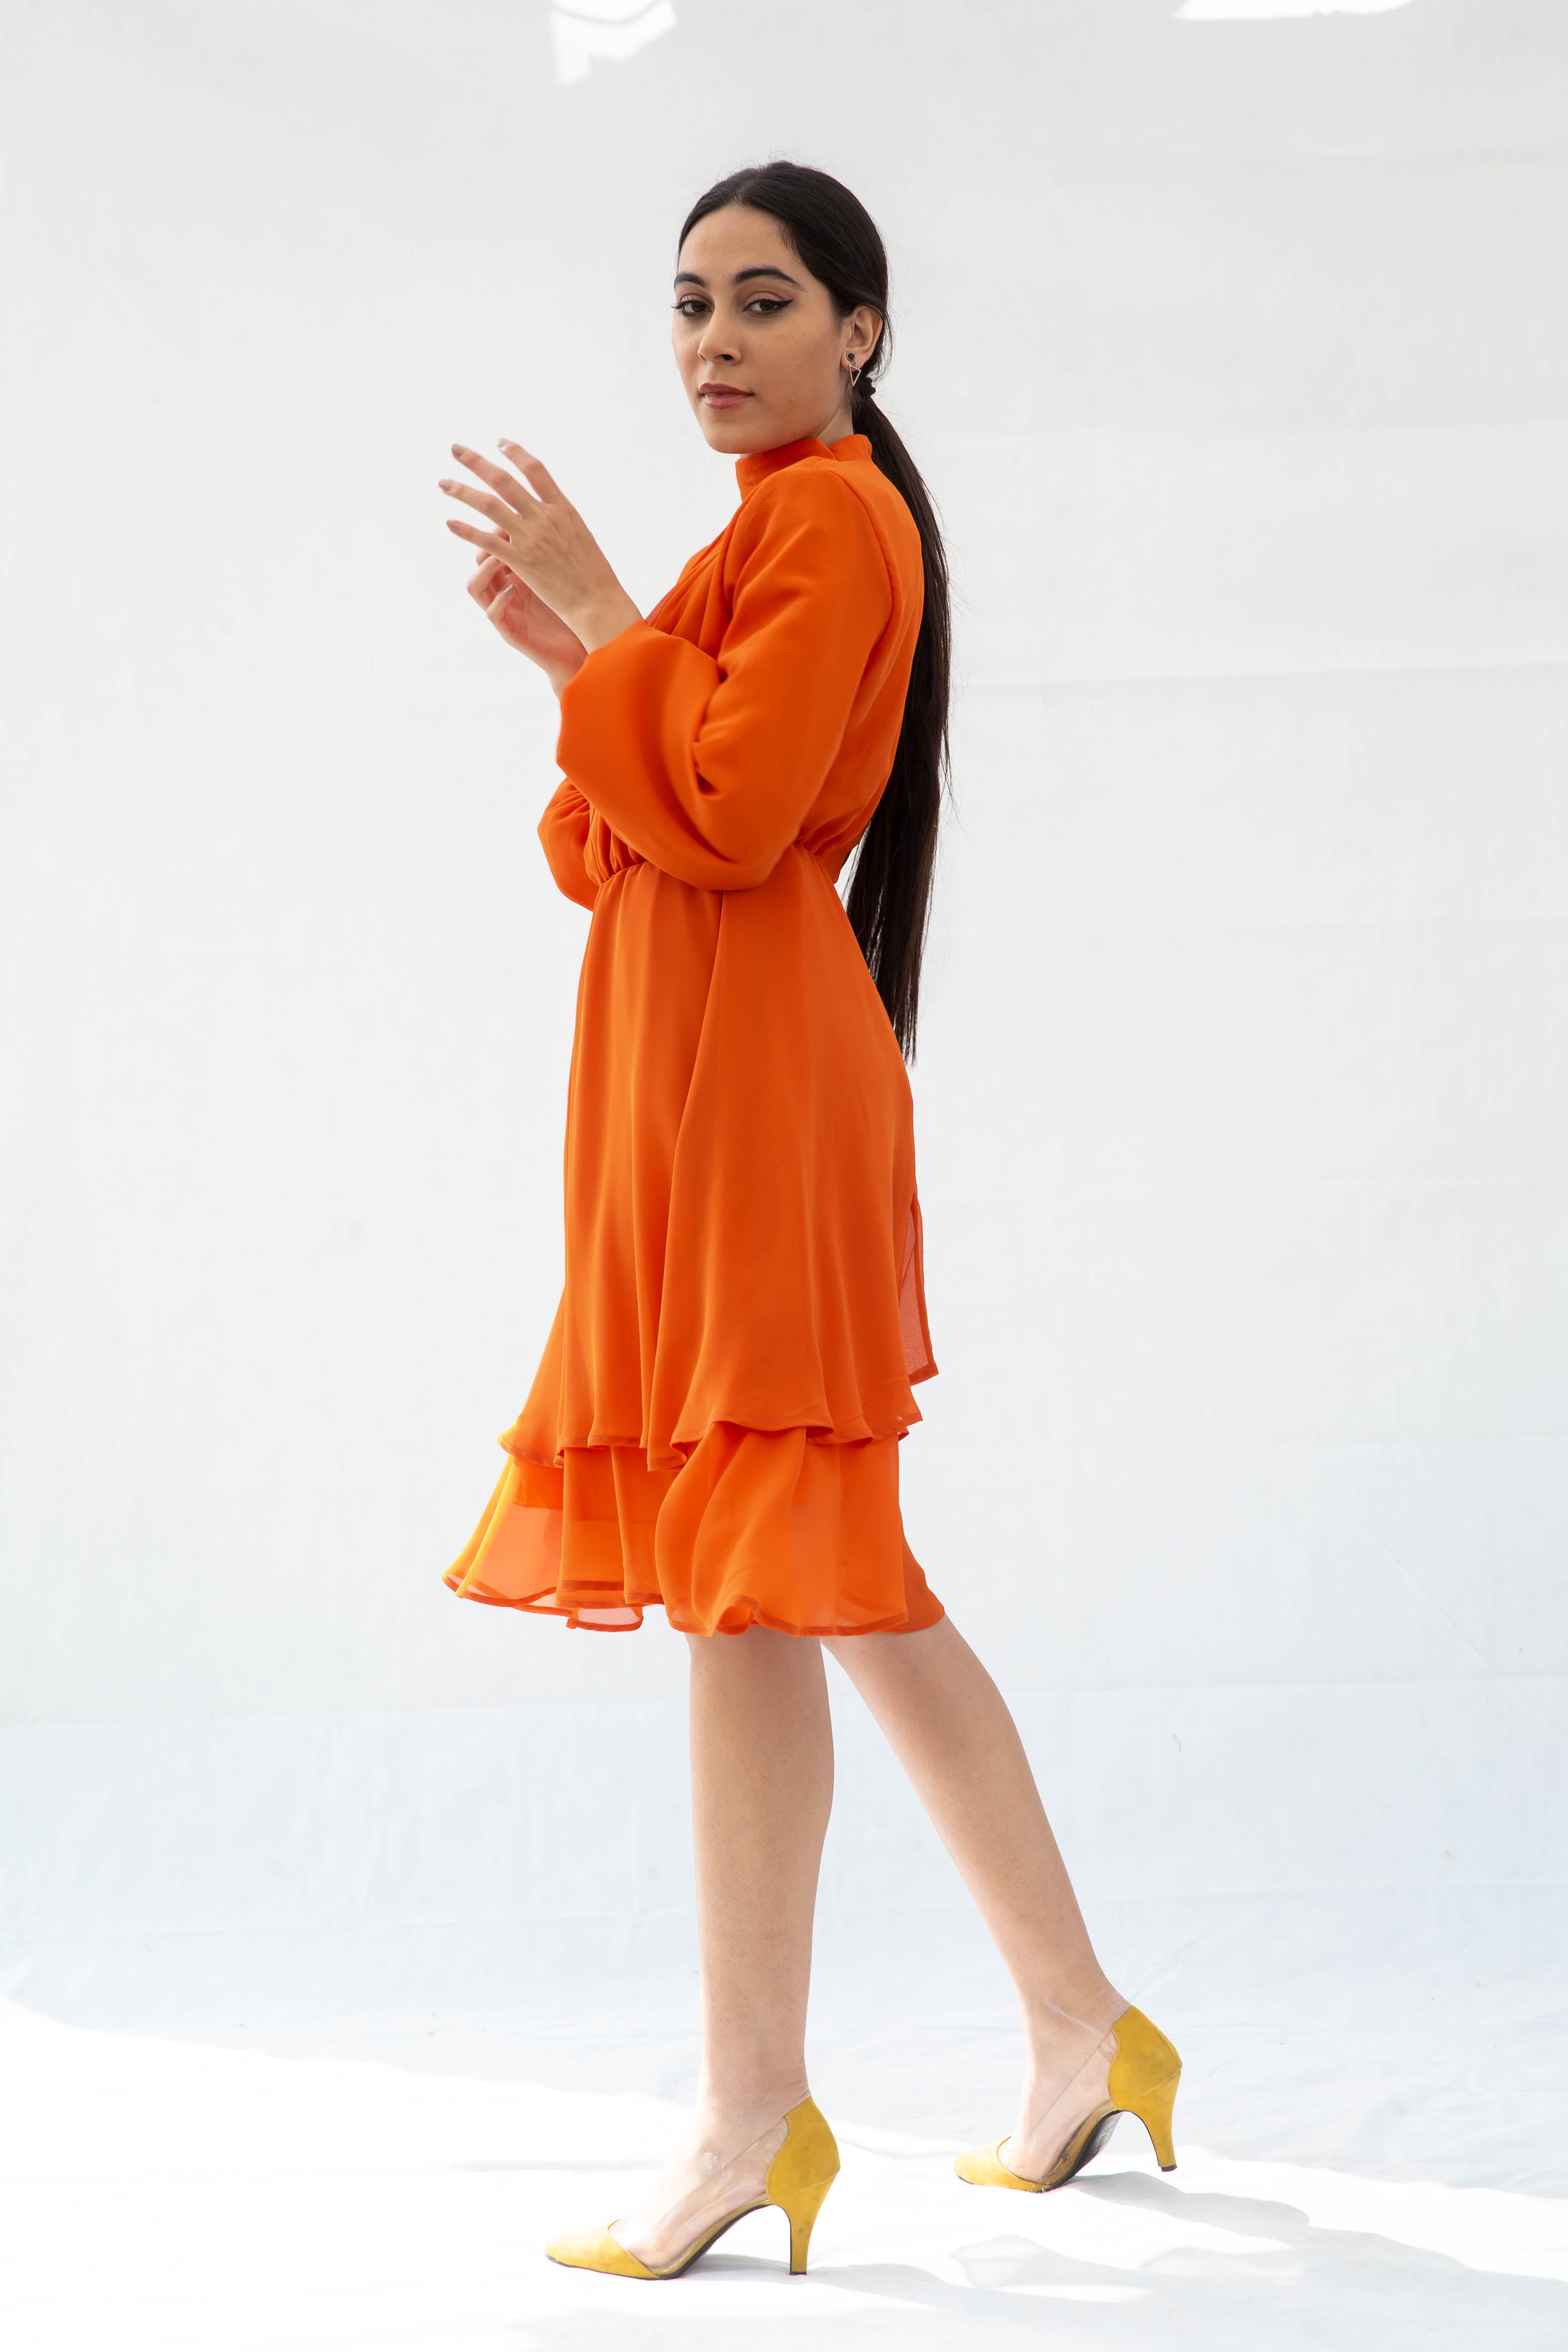 The princess Chiffon Dress- Orange